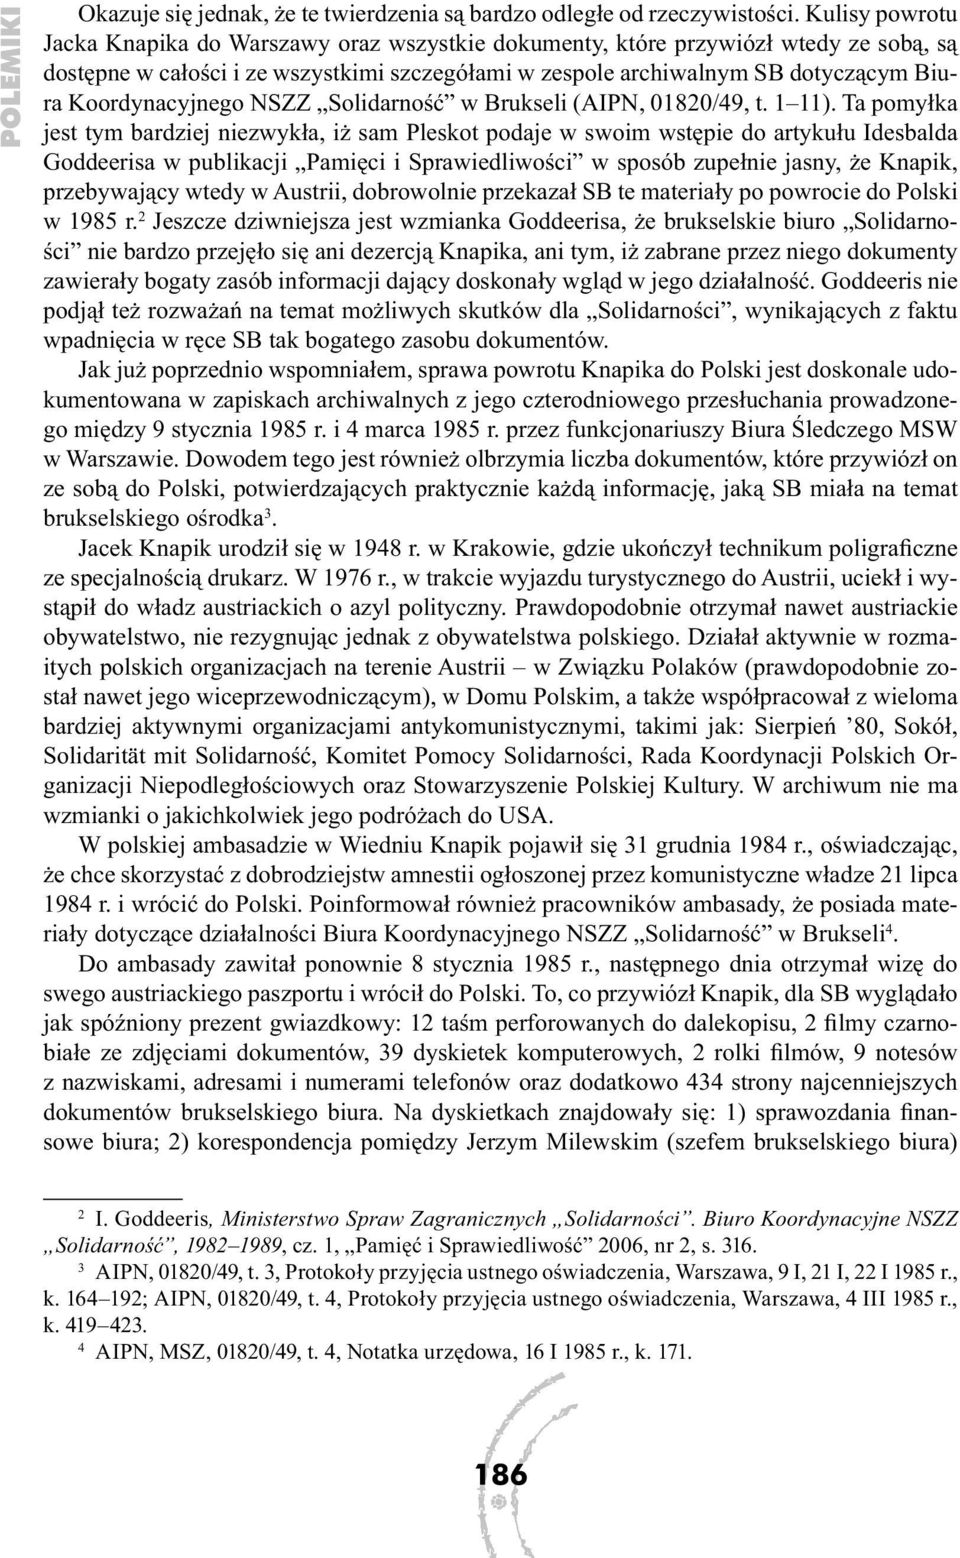 Koordynacyjnego NSZZ Solidarność w Brukseli (AIPN, 01820/49, t. 1 11).